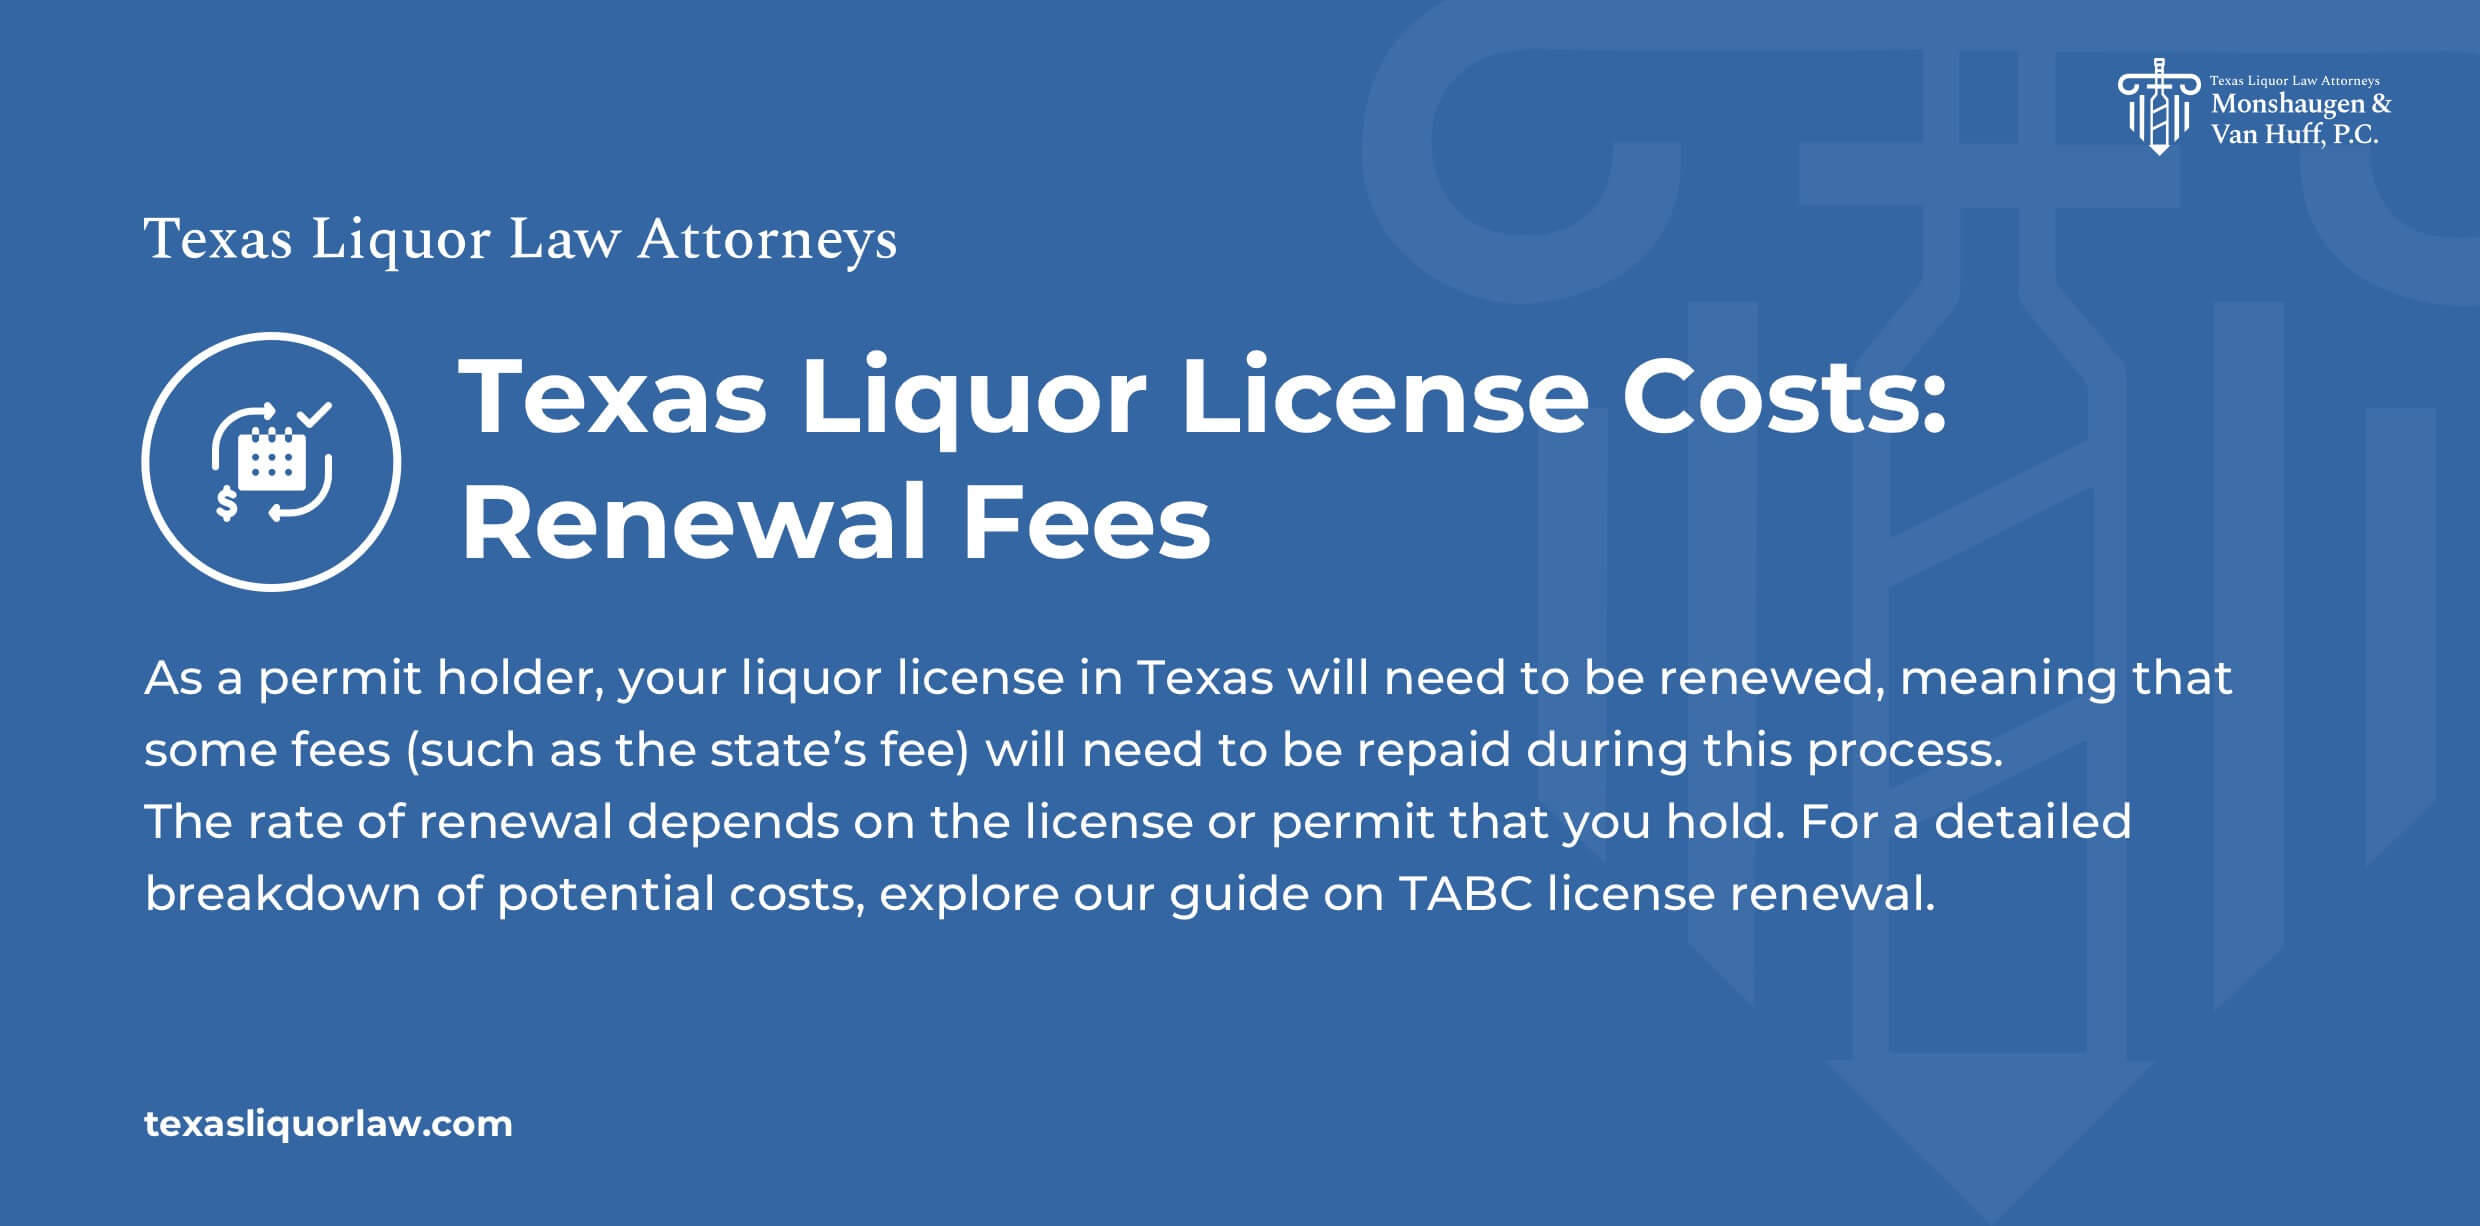 Renewal Fees Texas Liquor License Costs